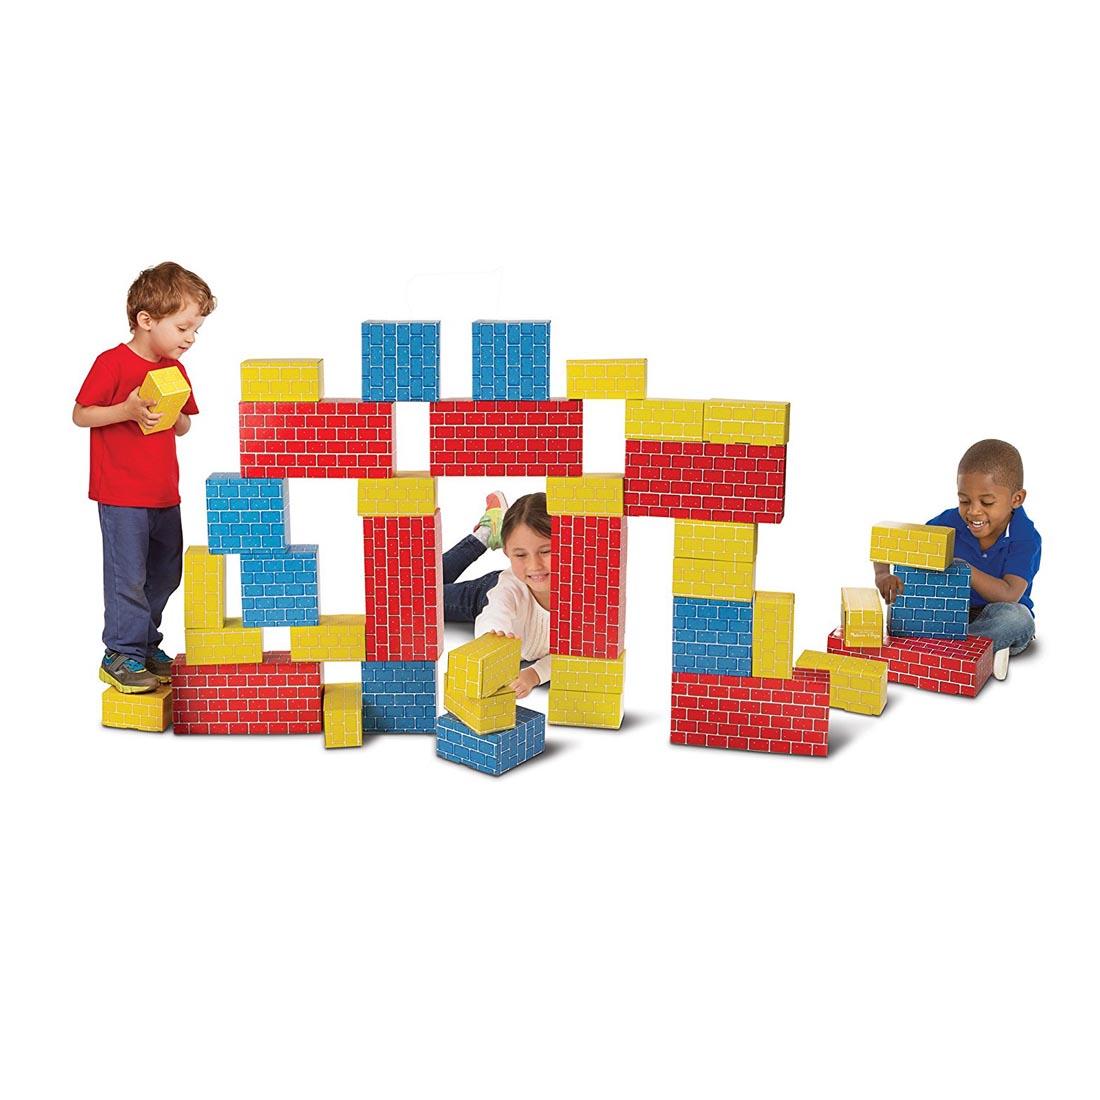 Children stacking Deluxe Jumbo Cardboard Blocks